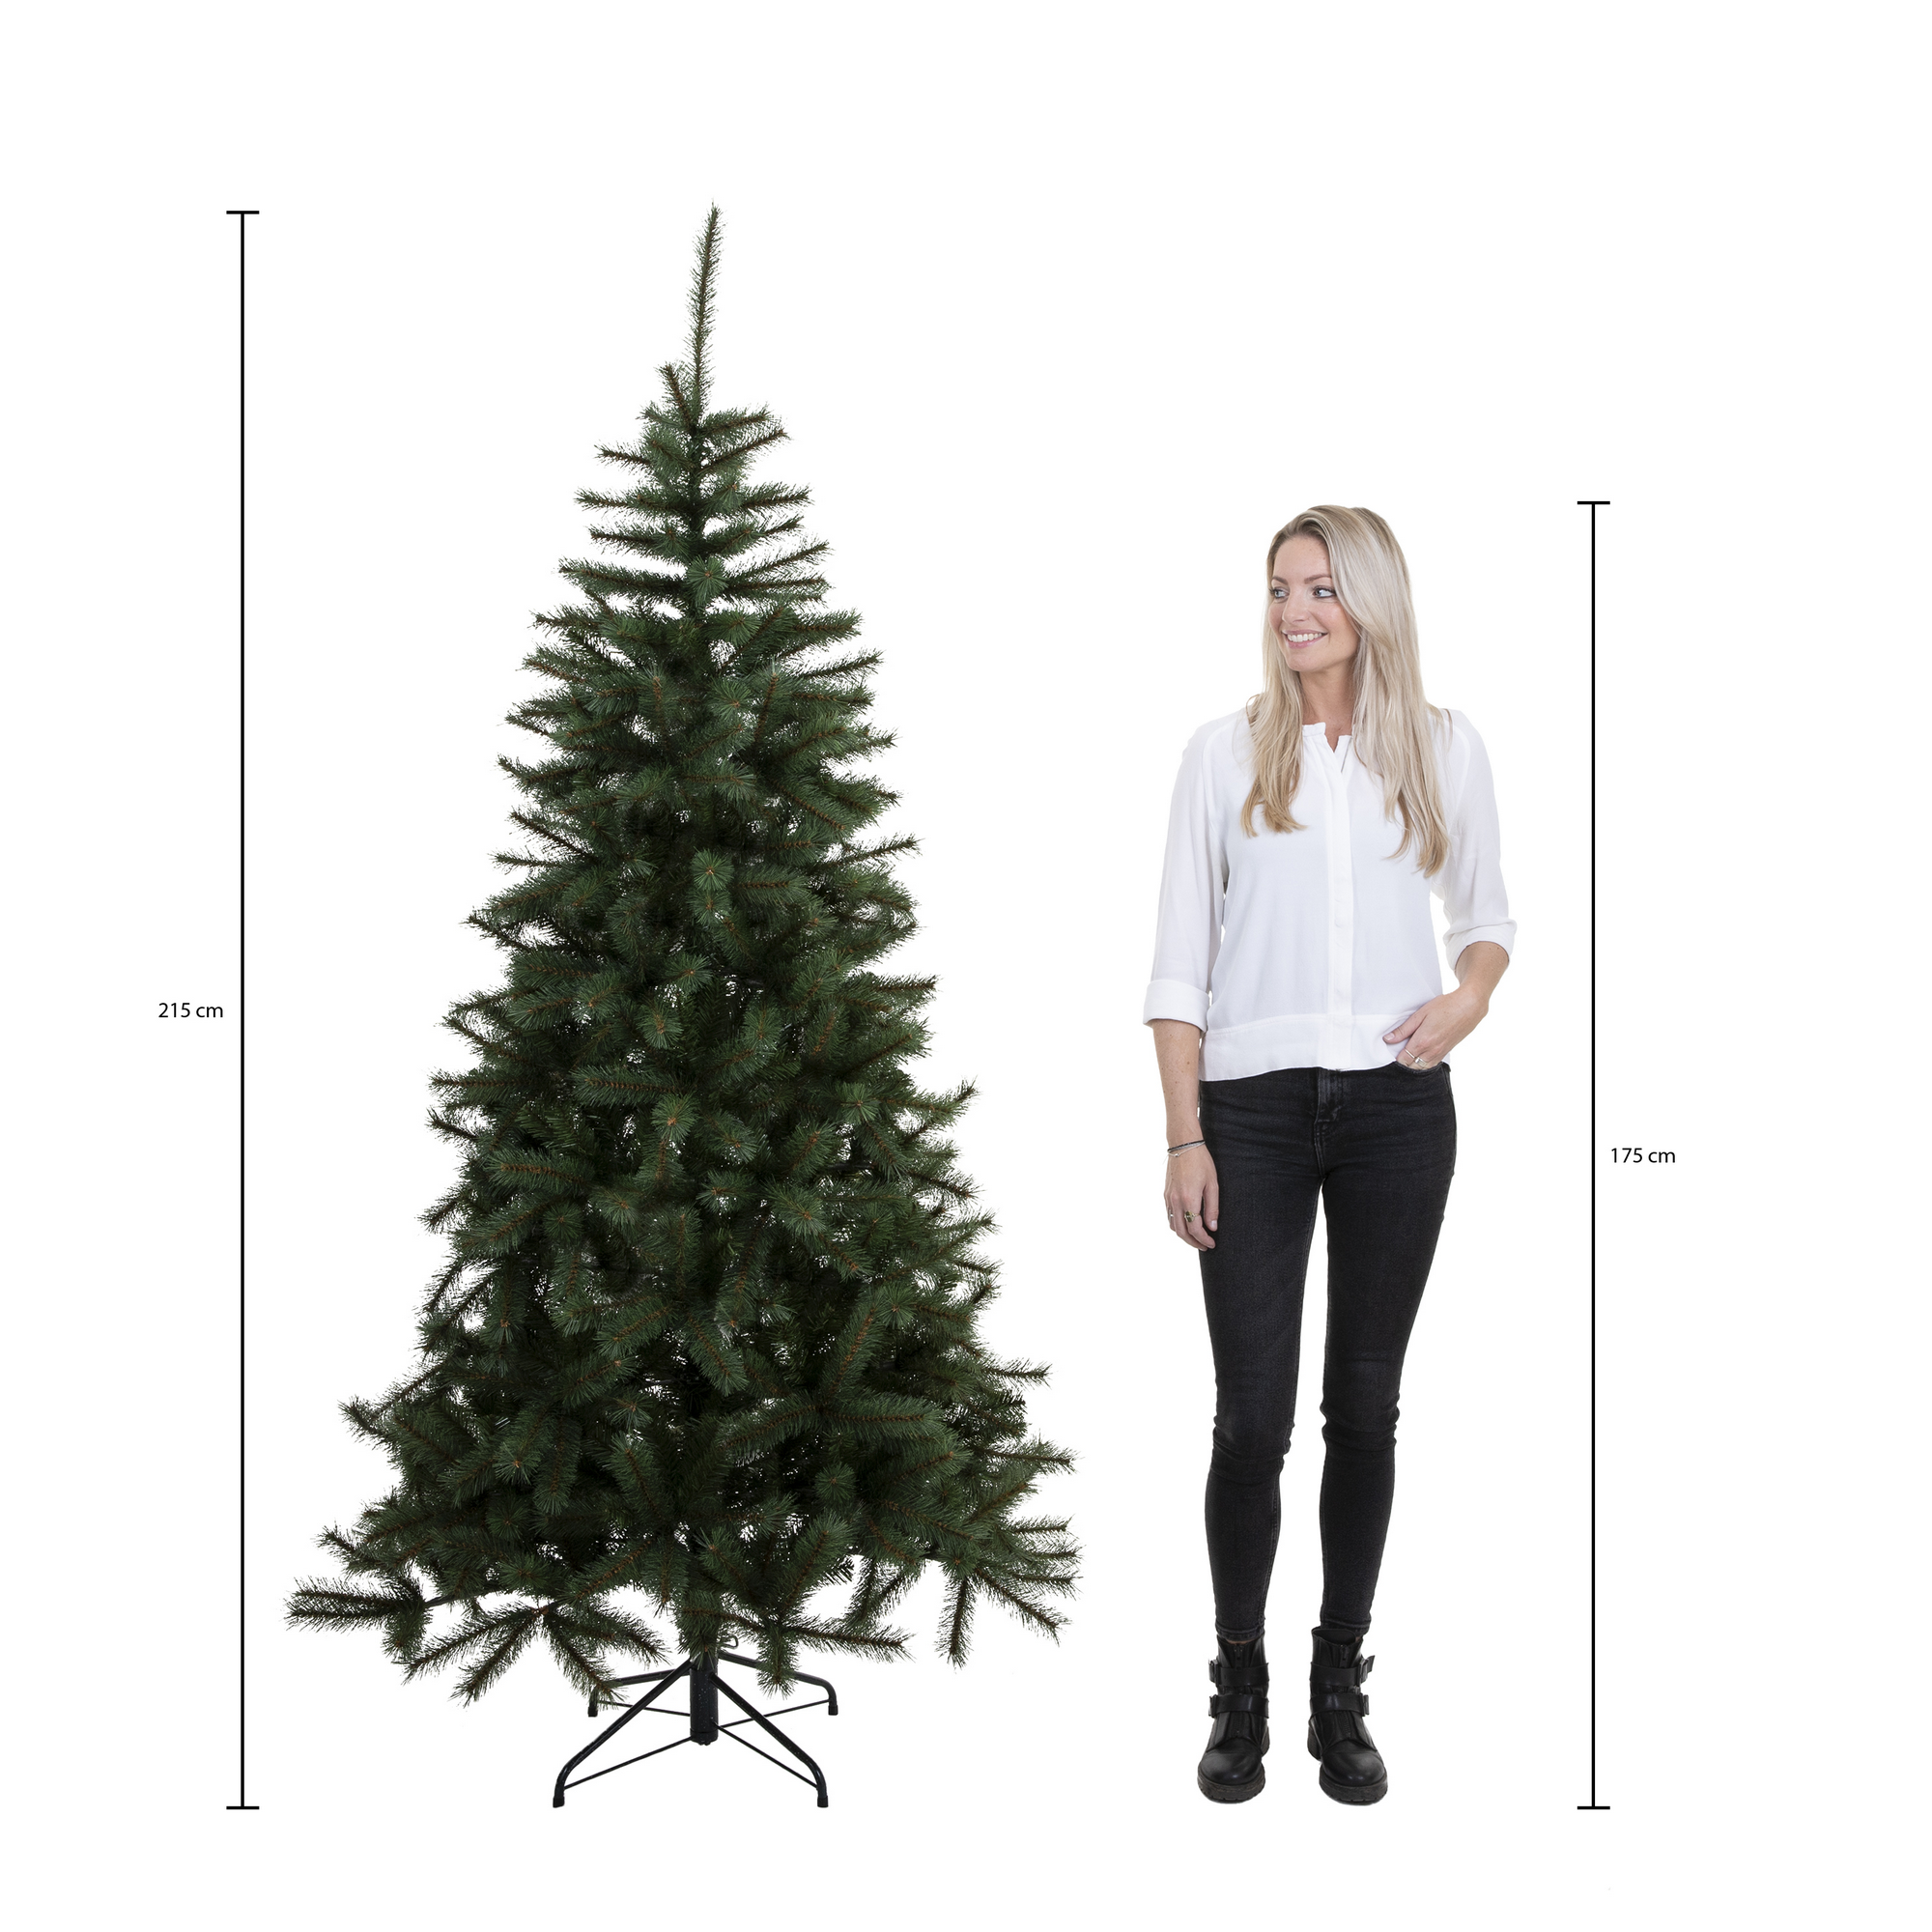 Künstlicher Weihnachtsbaum 'Vail' grün 215 cm + product picture